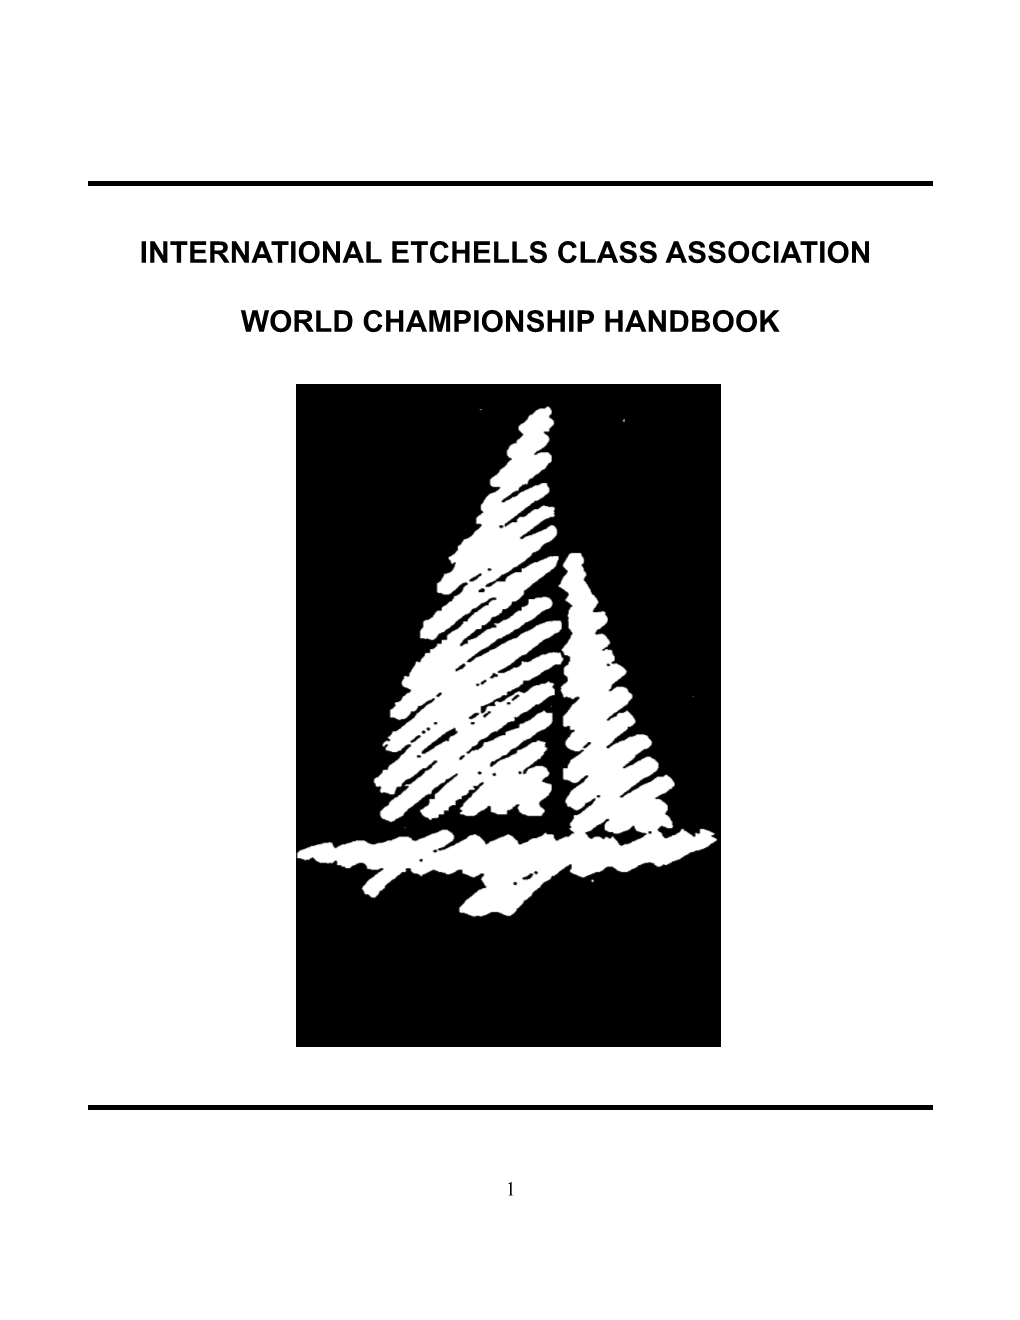 Worlds Handbook